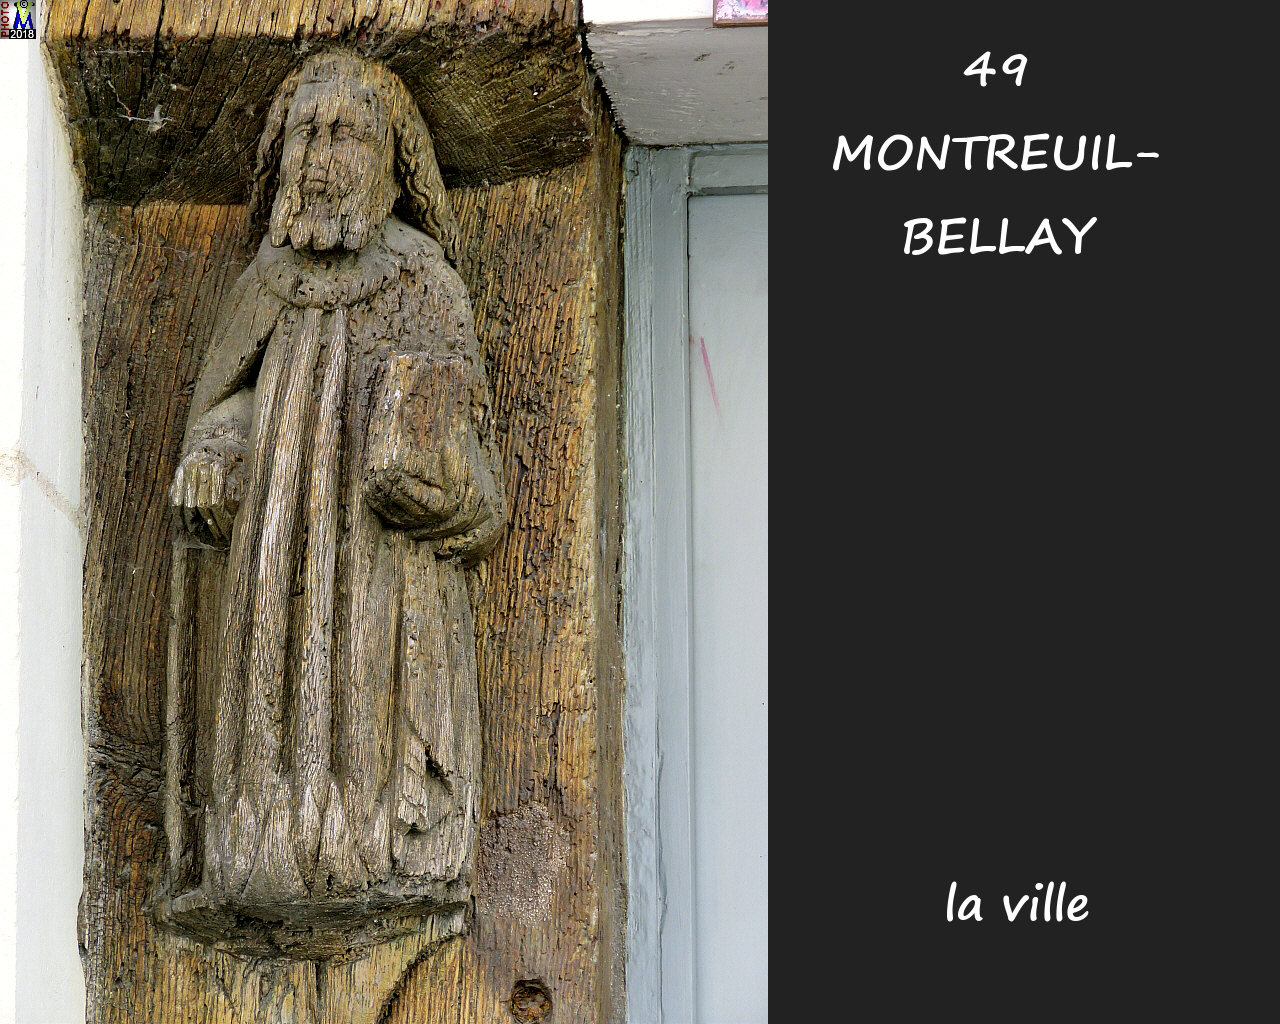 49MONTREUIL-BELLAY_ville_1018.jpg